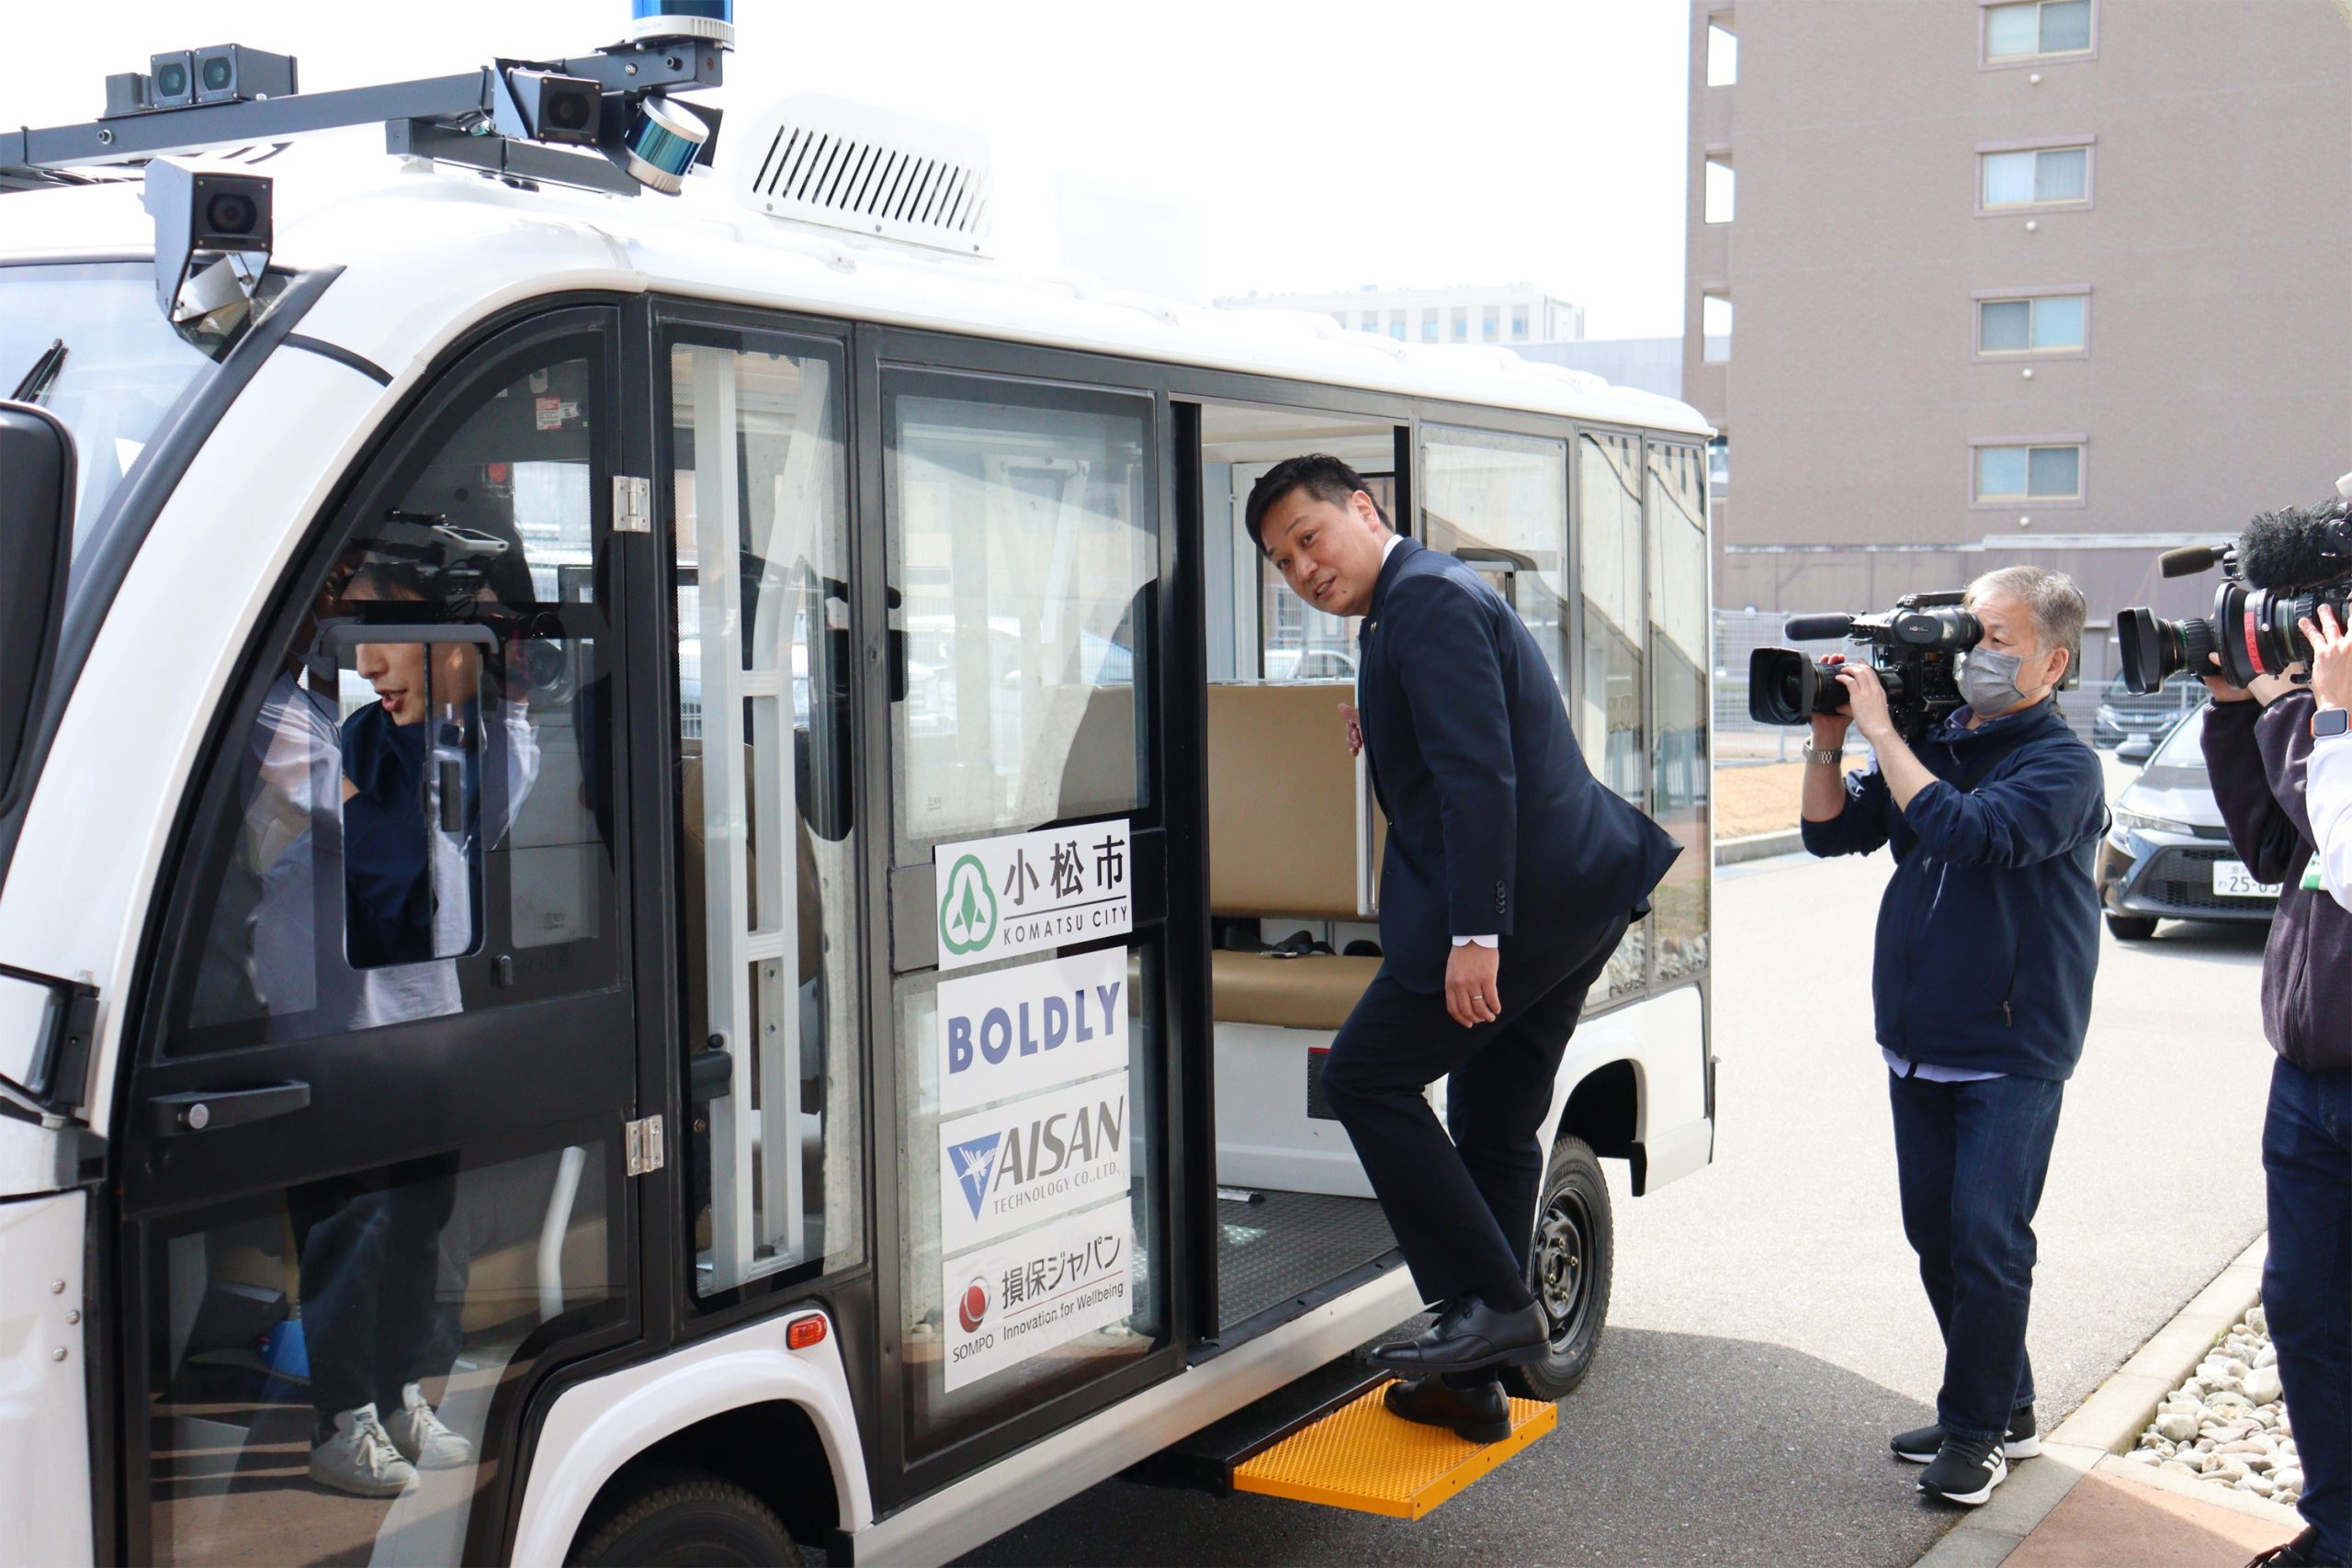 石川県小松市、JR小松駅・小松空港間アクセス向上を目的に、小型自動運転EVバスの実証実験を実施[ニュース]